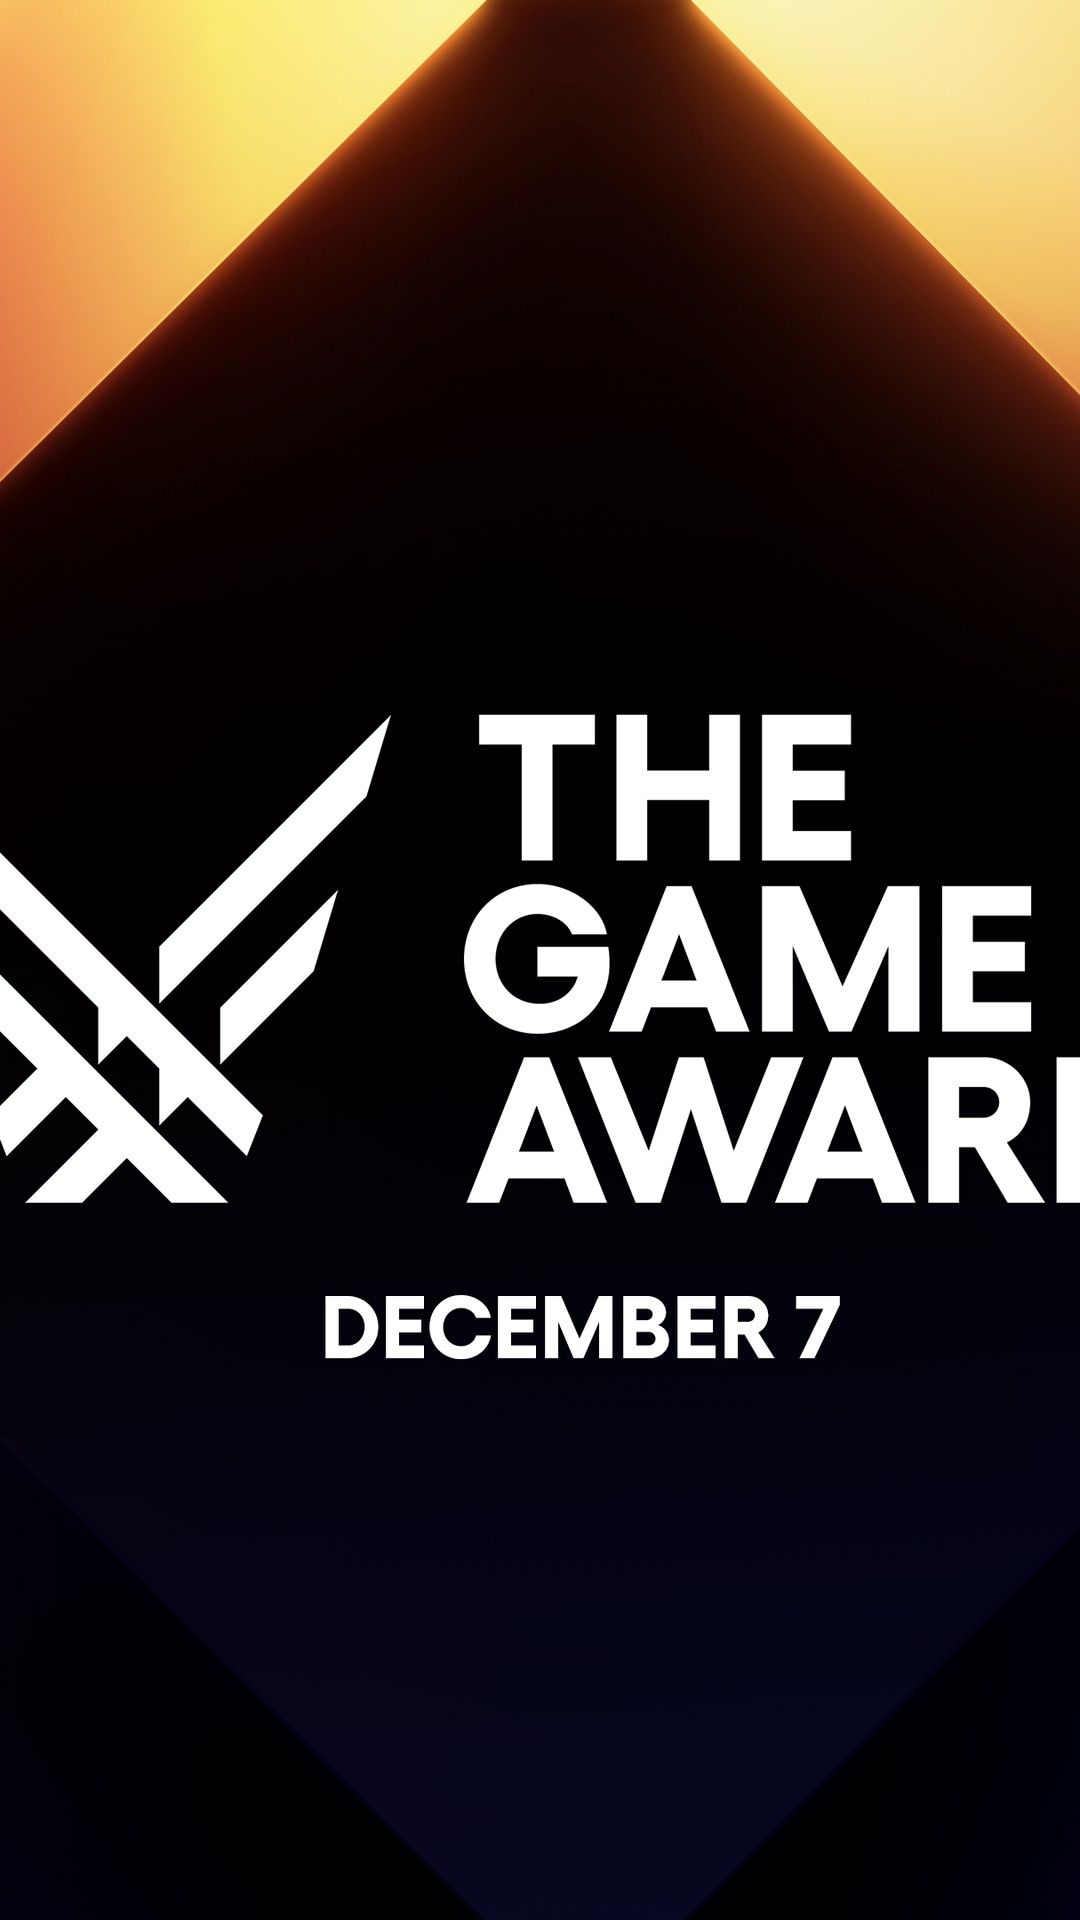 The Game Awards (TGA): Brasil concorre às categorias; veja quem foi  indicado;